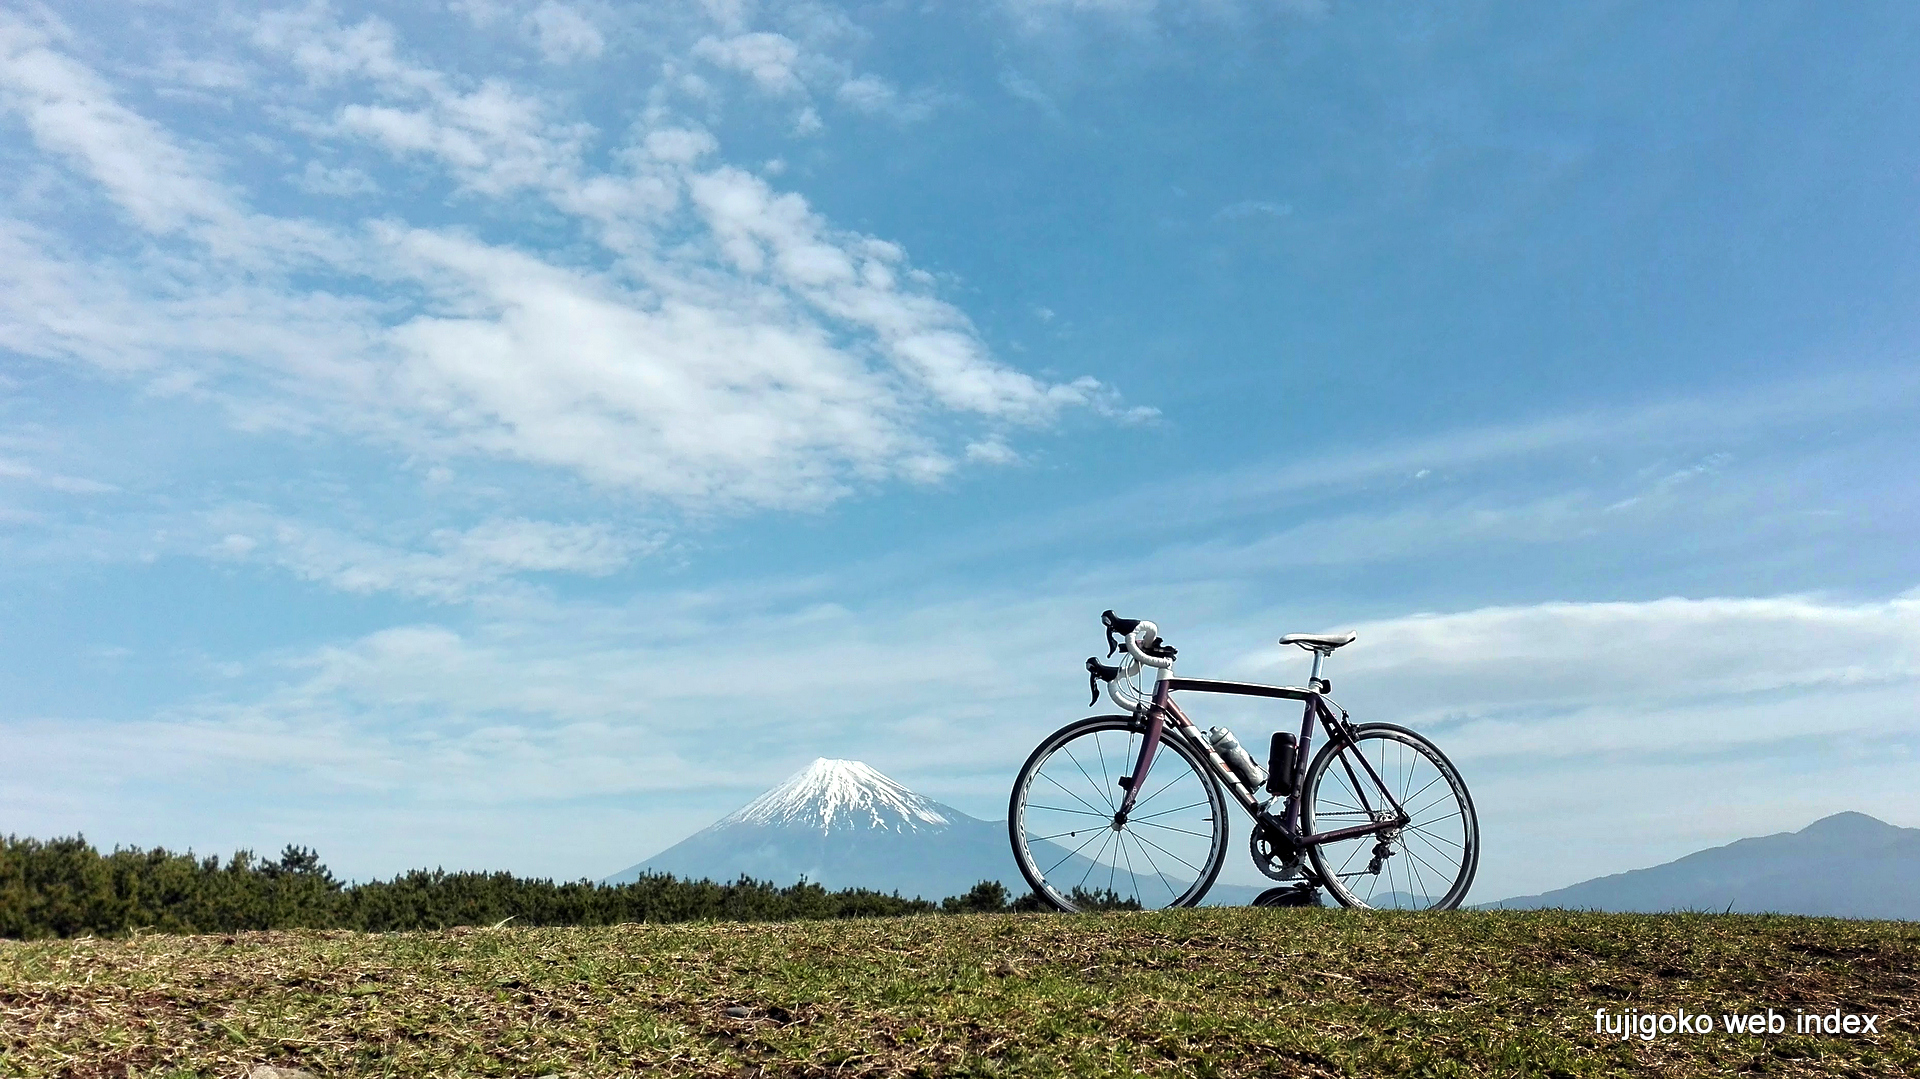 富士五湖webインデックス 壁紙 ちゃりblog ロードバイクあっという間に2年